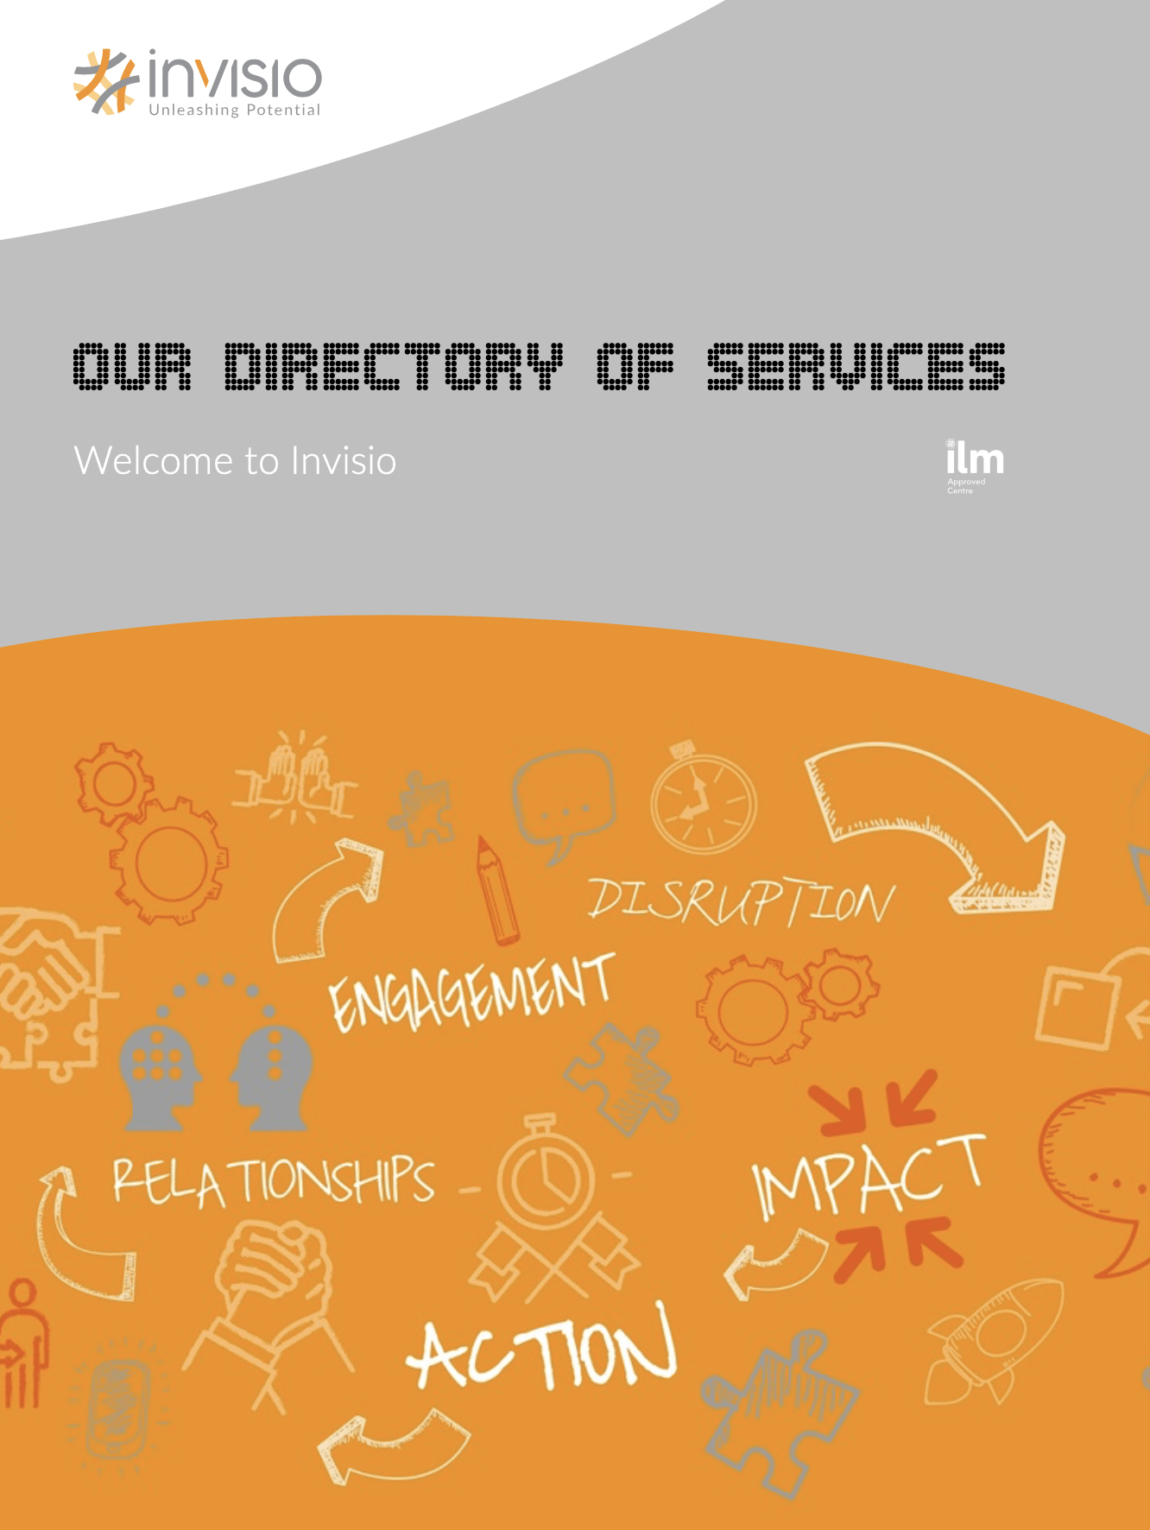 Invisio Directory of Services